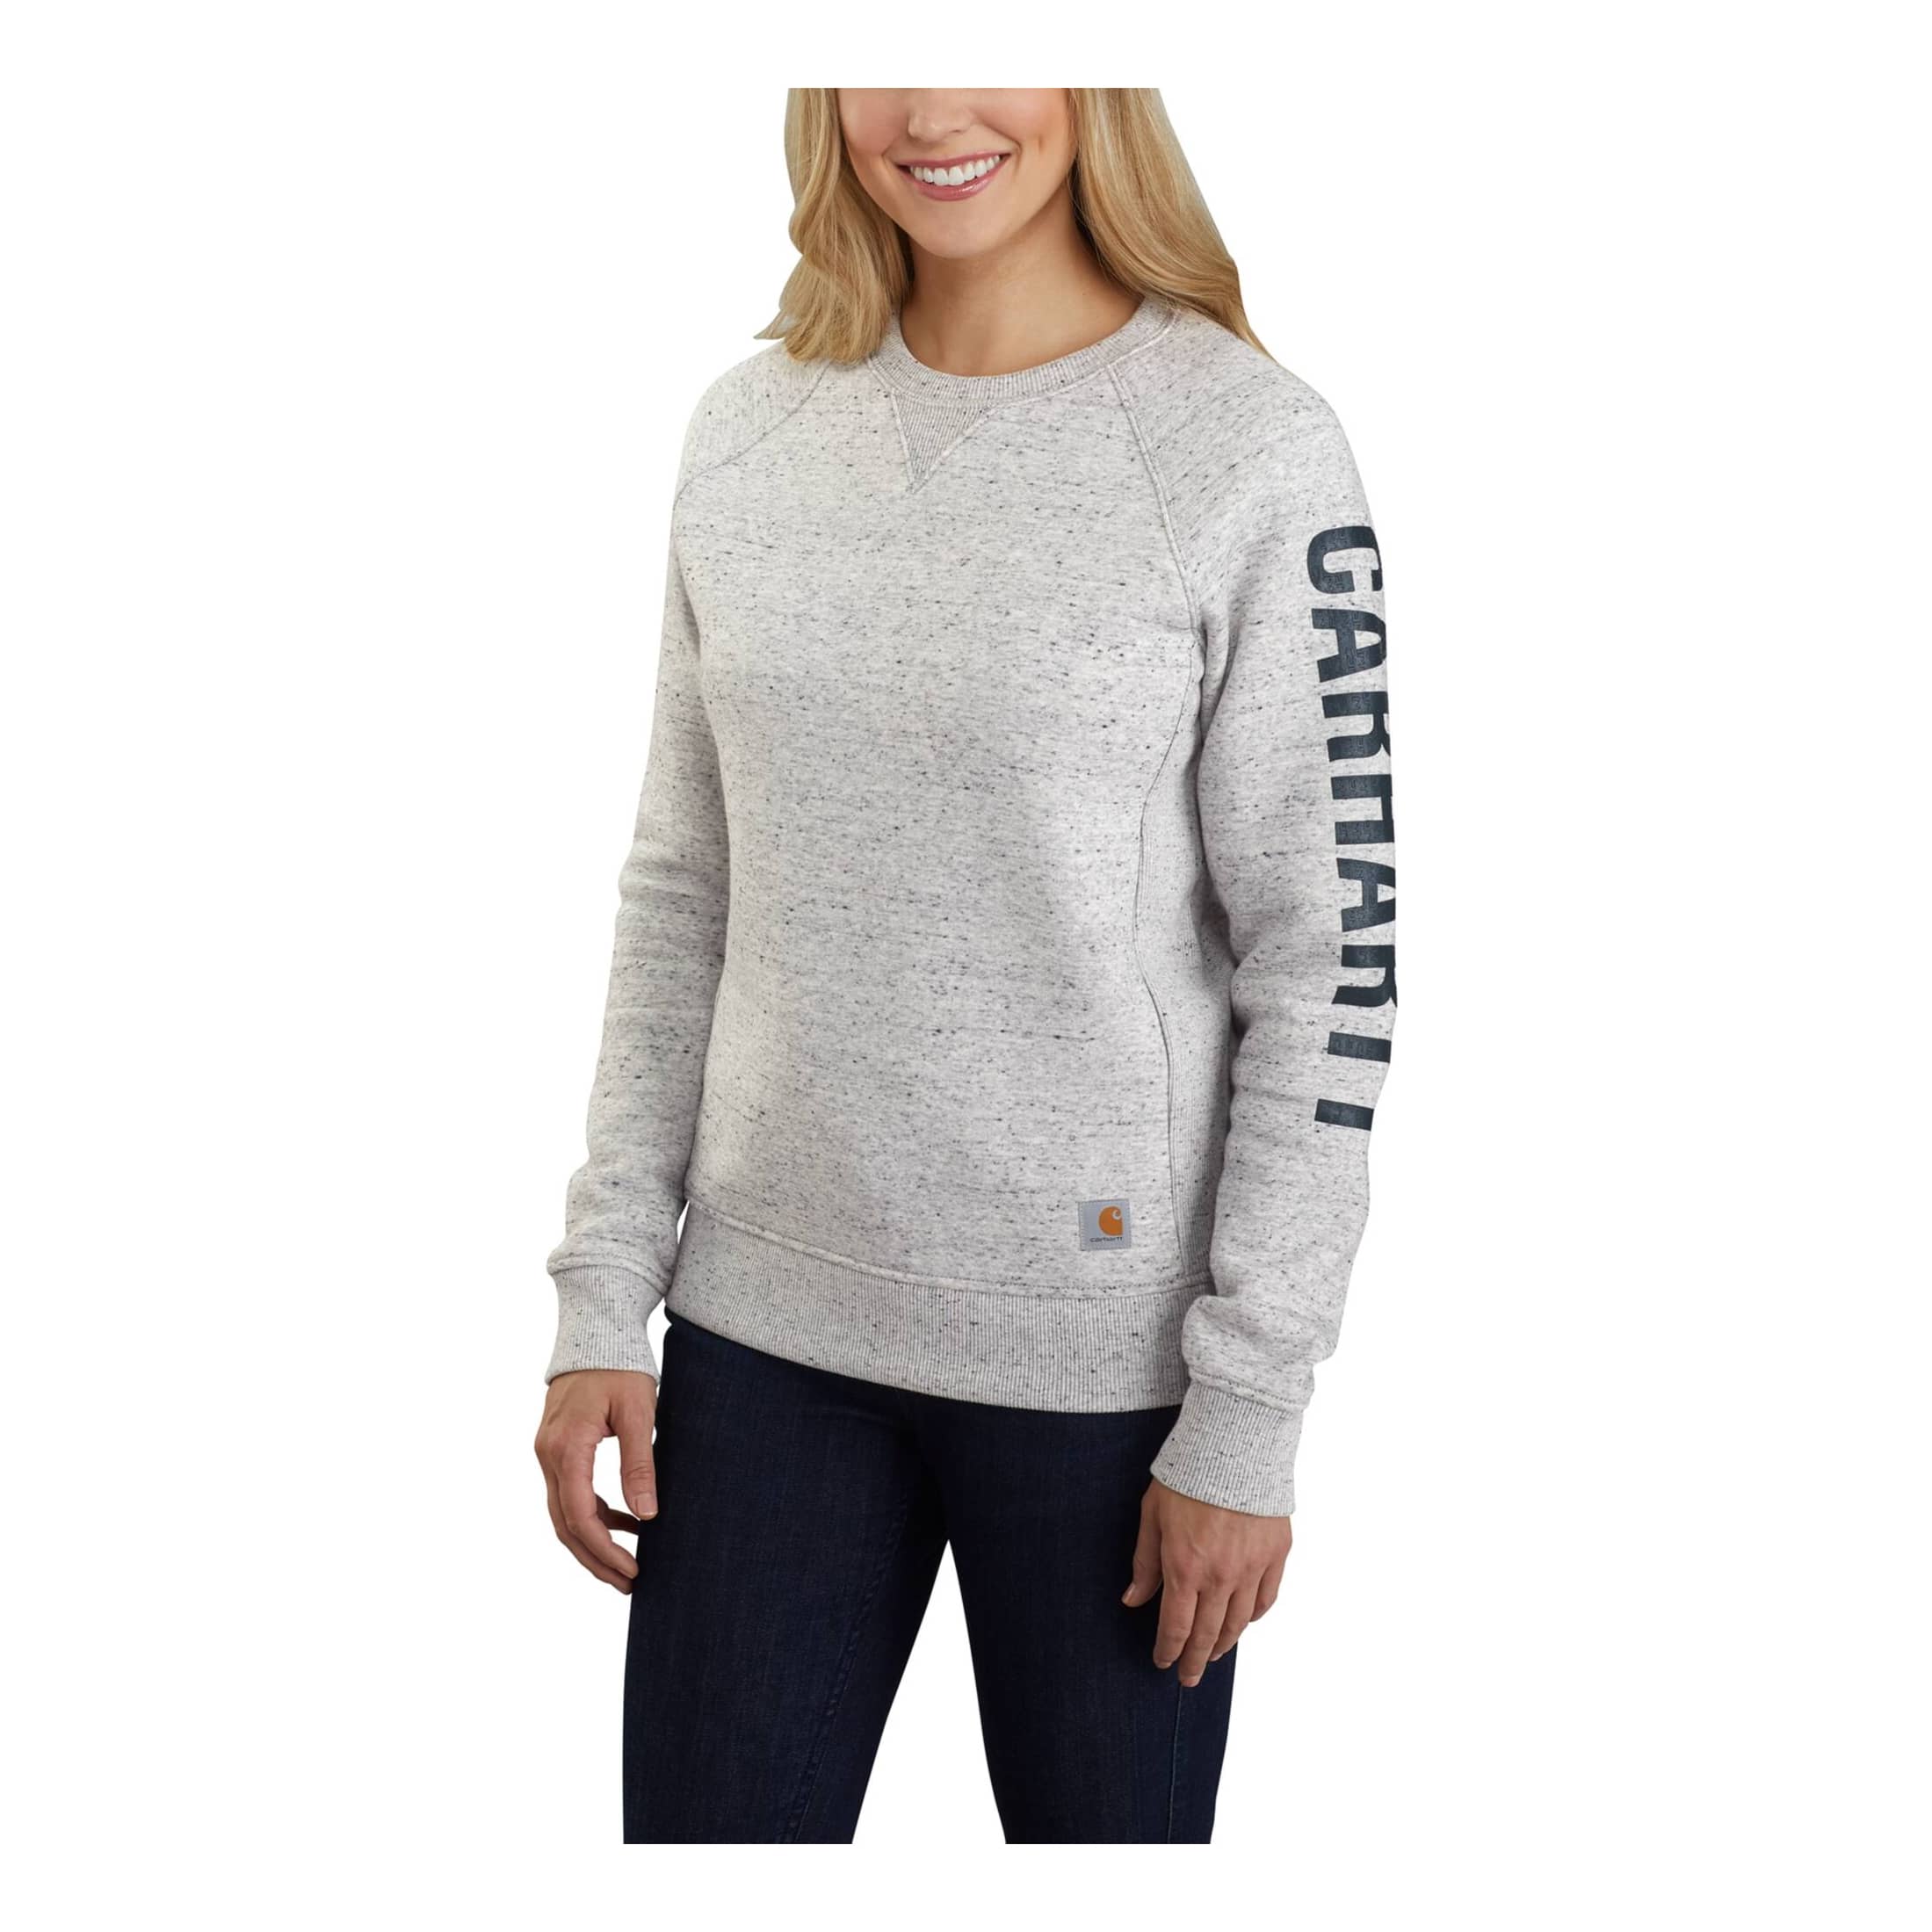 Carhartt Women's Relaxed Fit Half Zip Sweatshirt